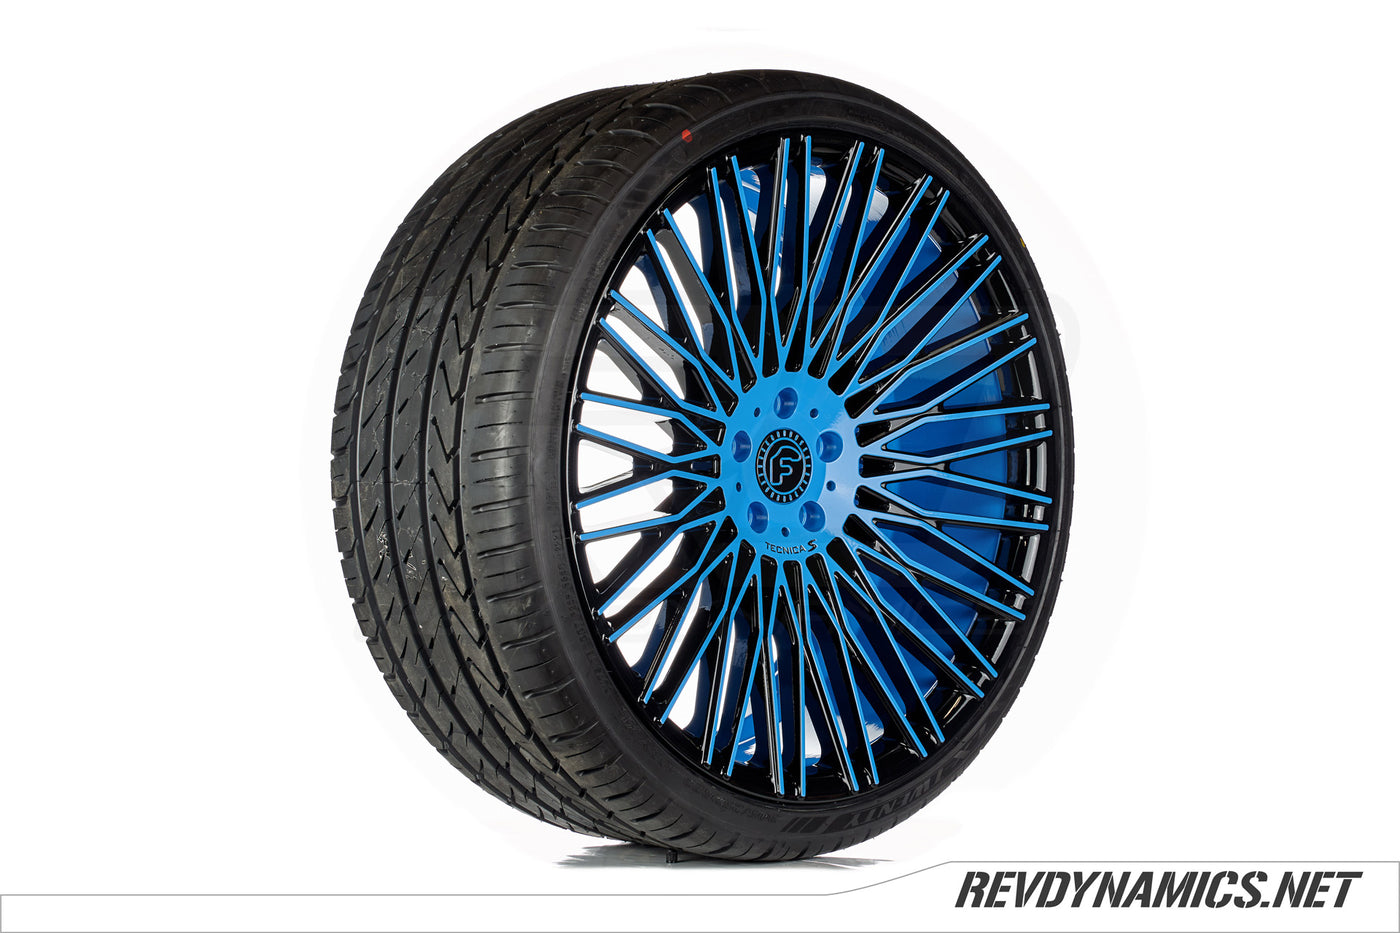 Forgiato Tecnica S3 22" Wheel in Miami Blue and Black Two tone